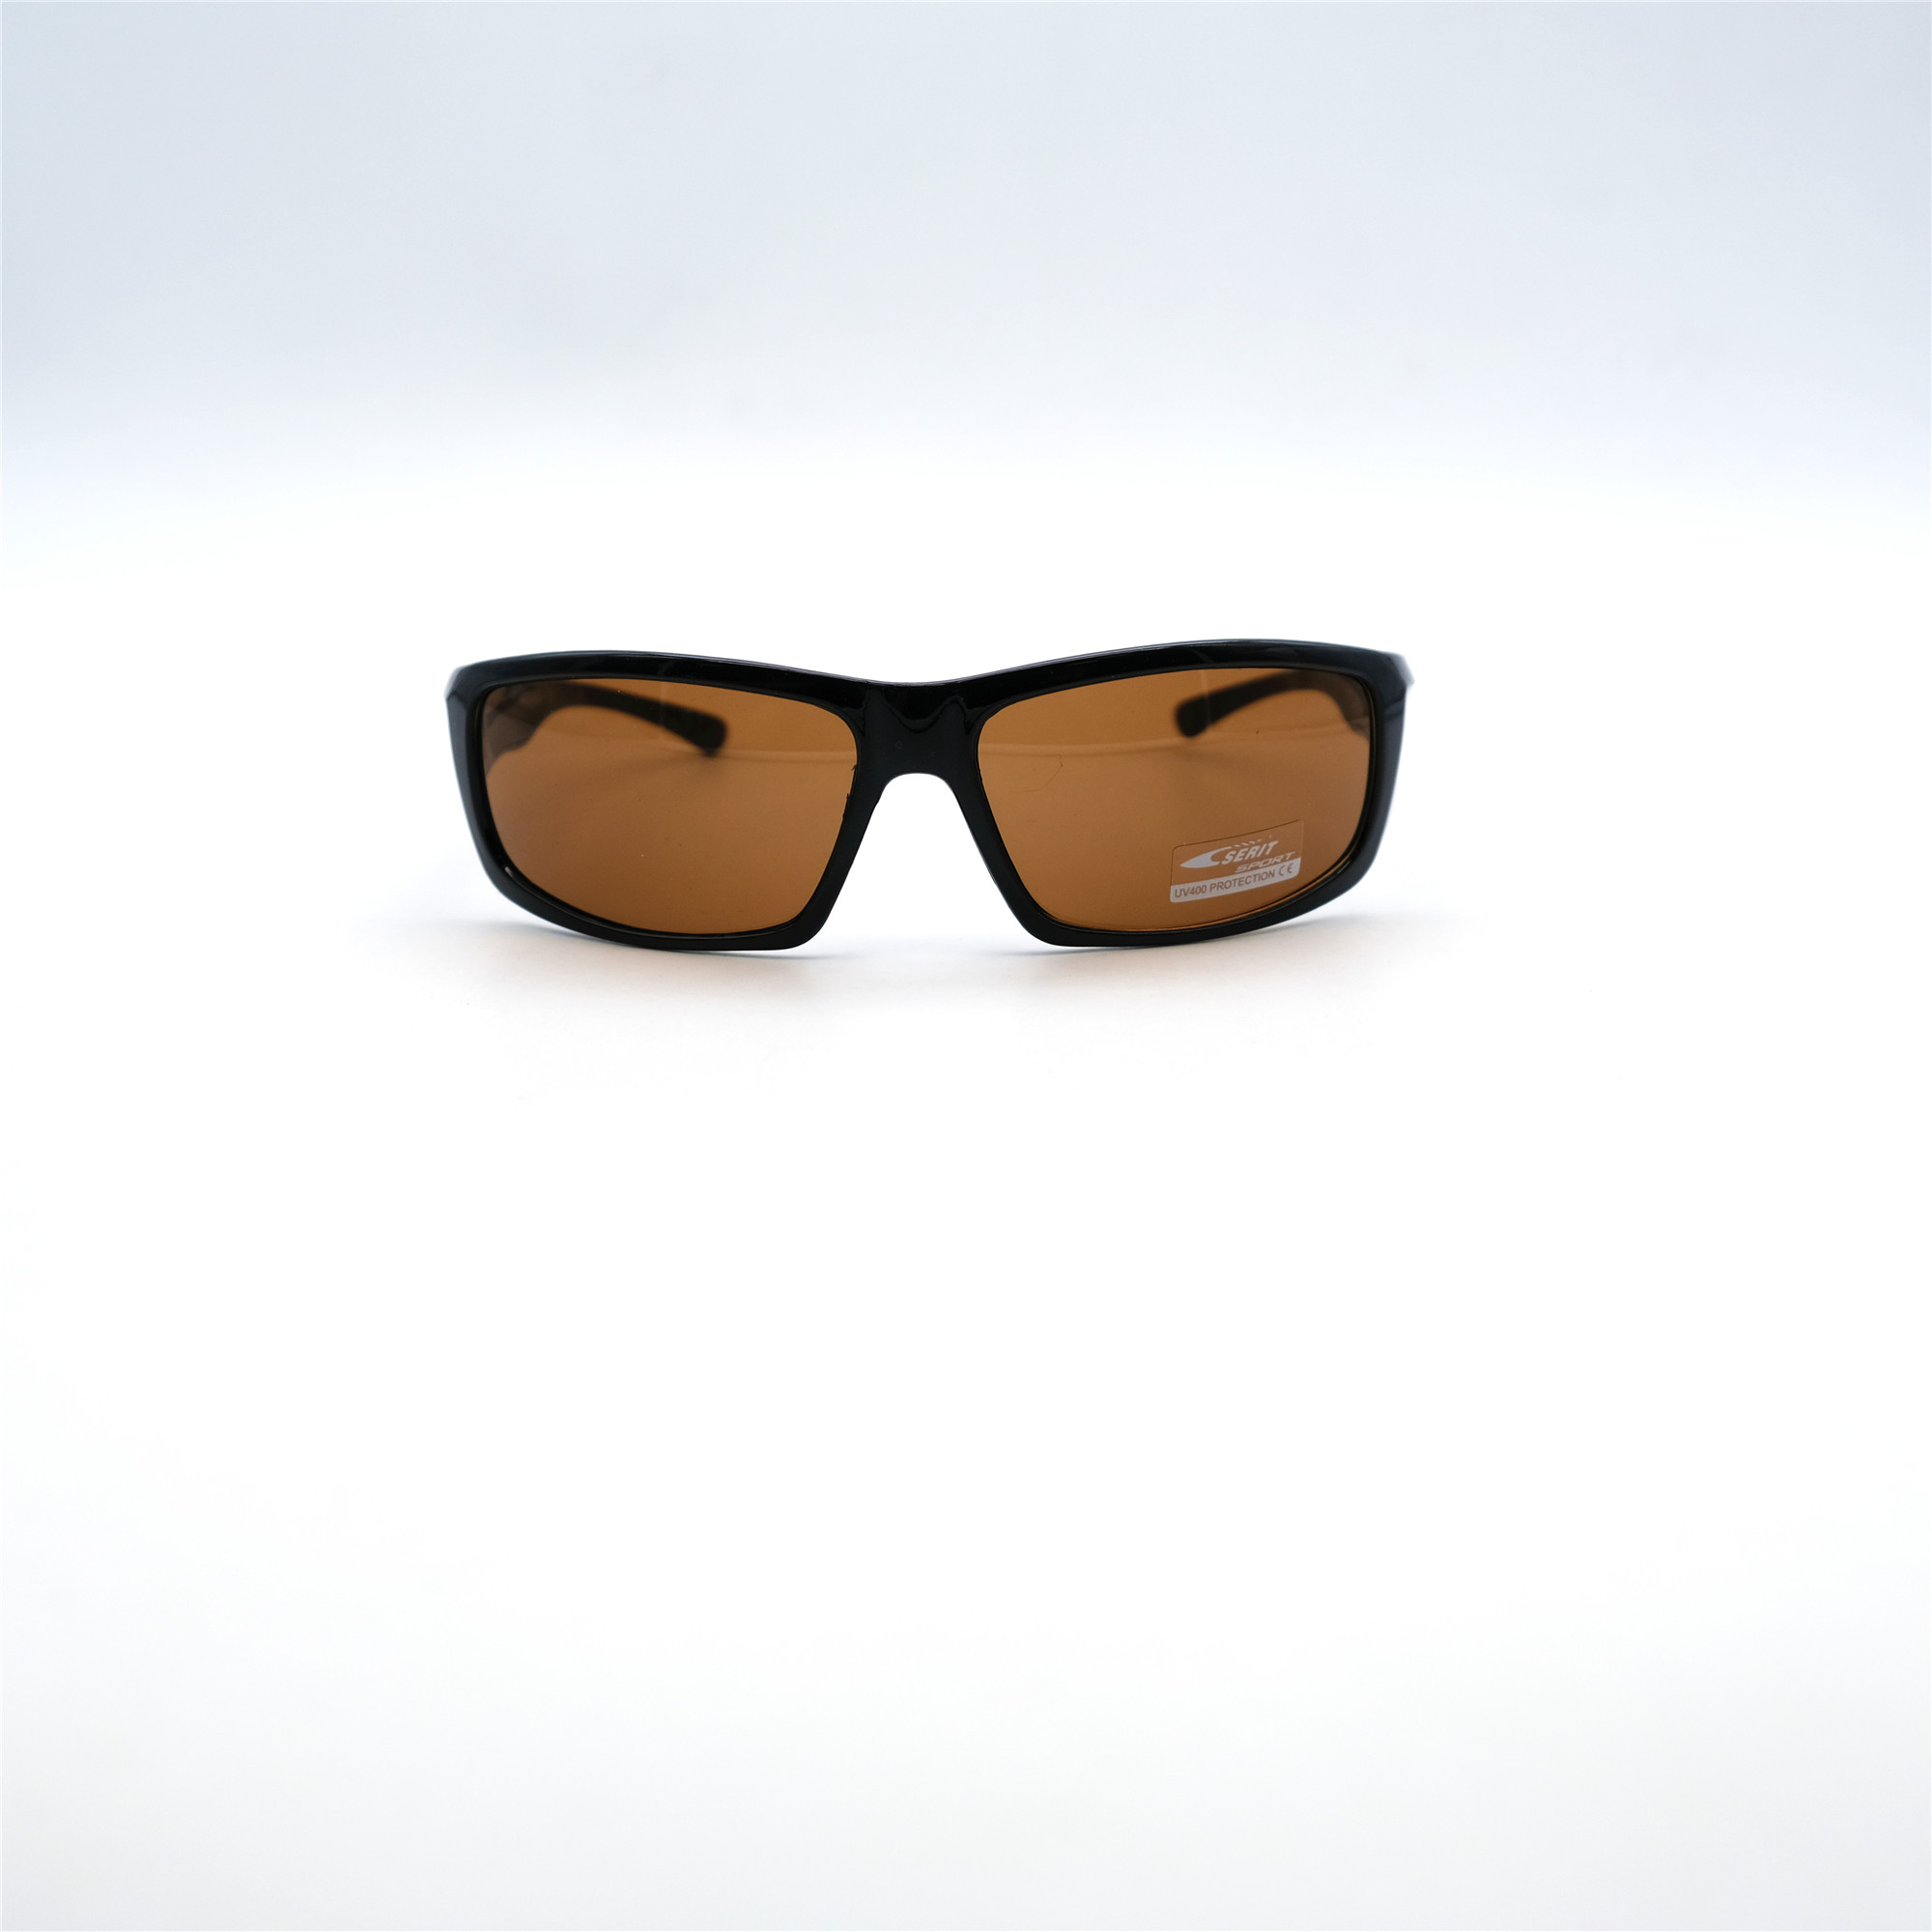  Солнцезащитные очки картинка Мужские Serit  Спорт S318-C2 